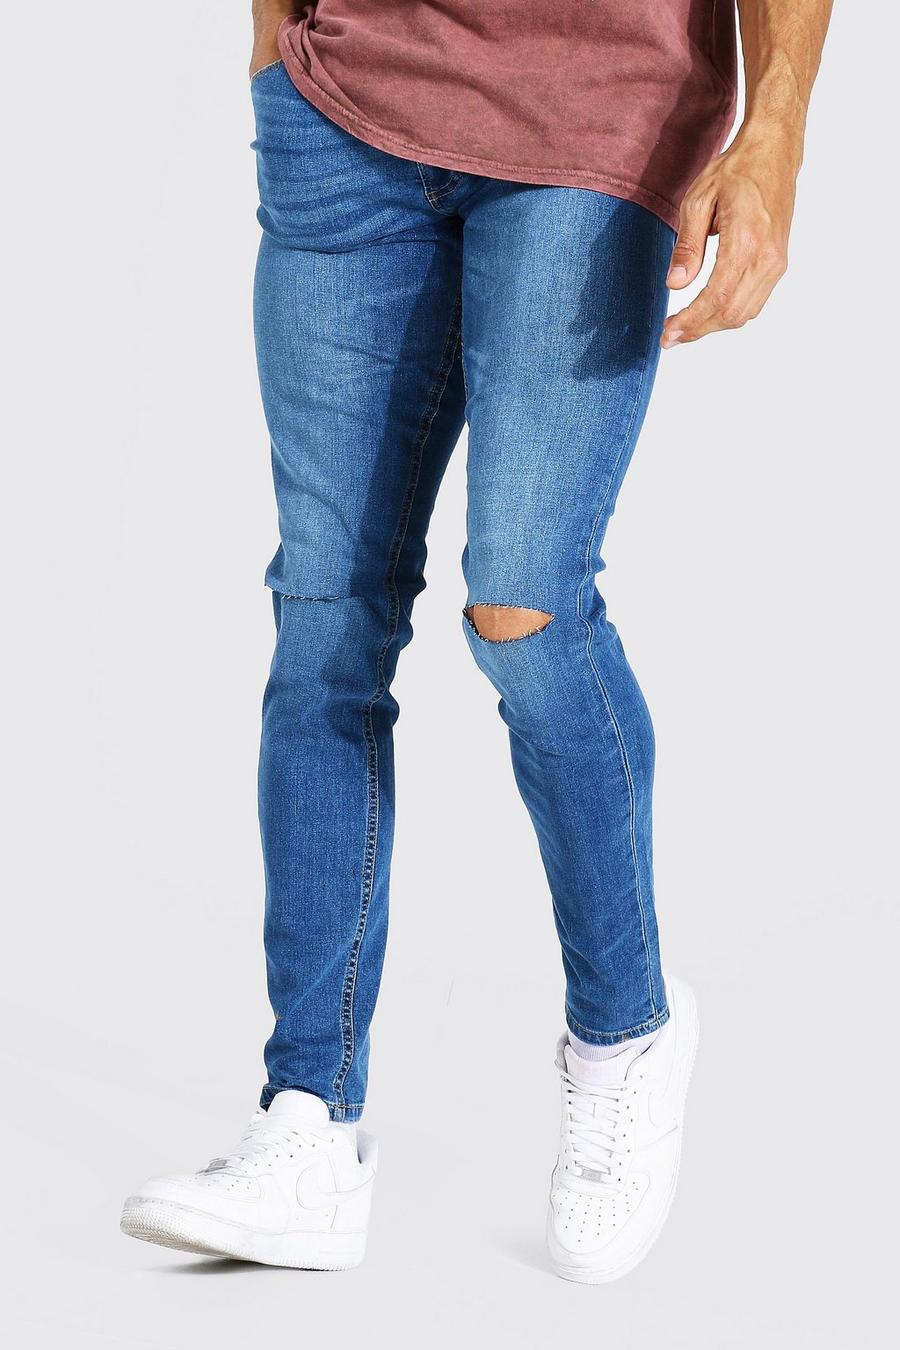 Jeans Tall Skinny Fit elasticizzati con tagli sul ginocchio, Antique blue image number 1